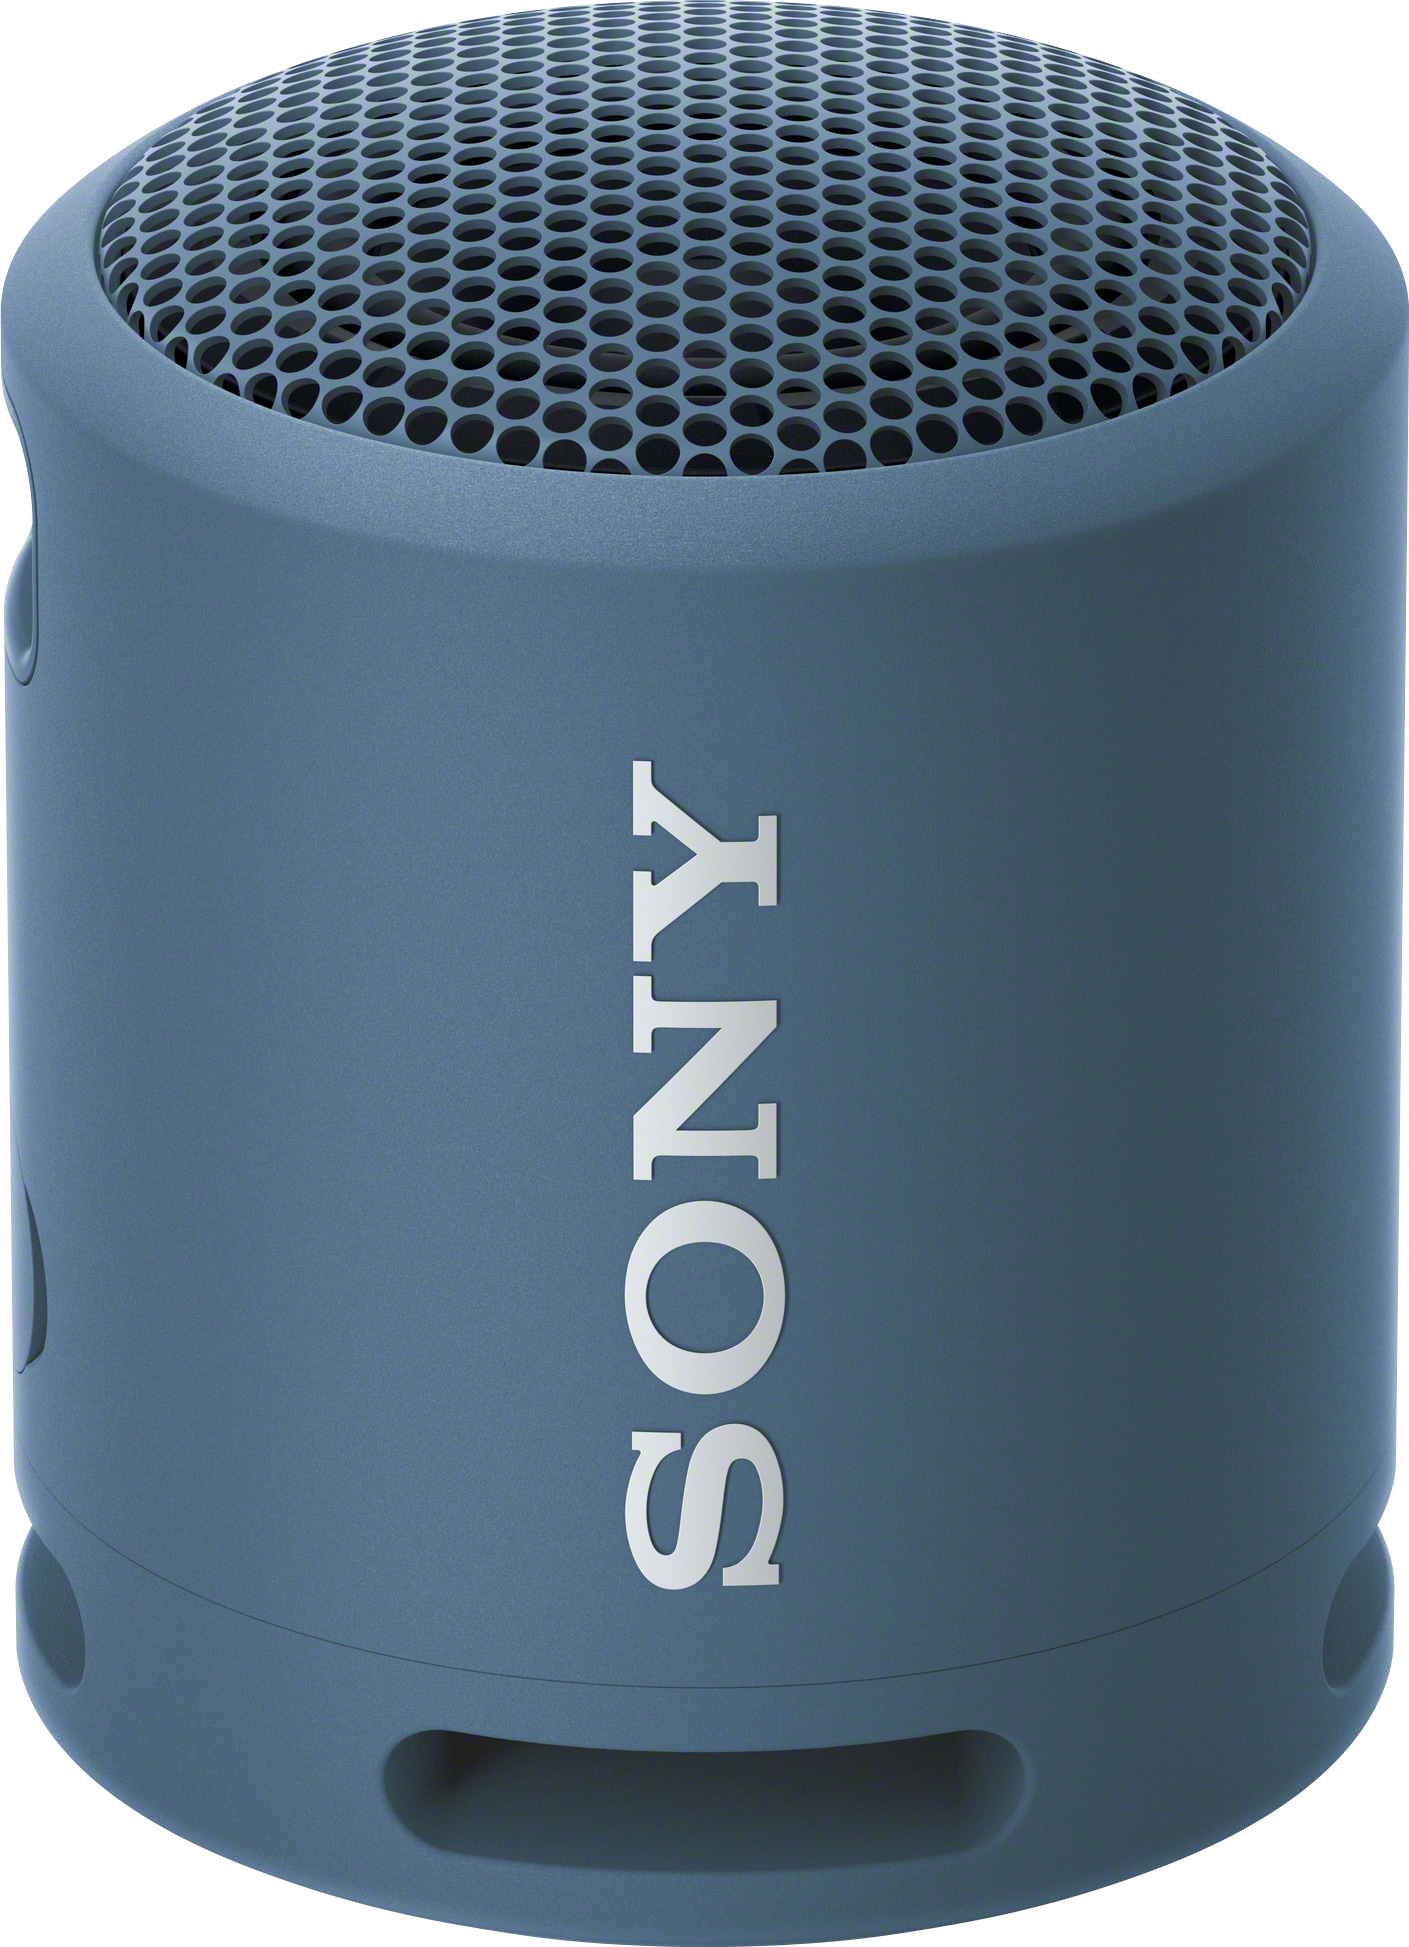 Sony bärbar trådlös högtalare SRS-XB13 (blå) - Elgiganten